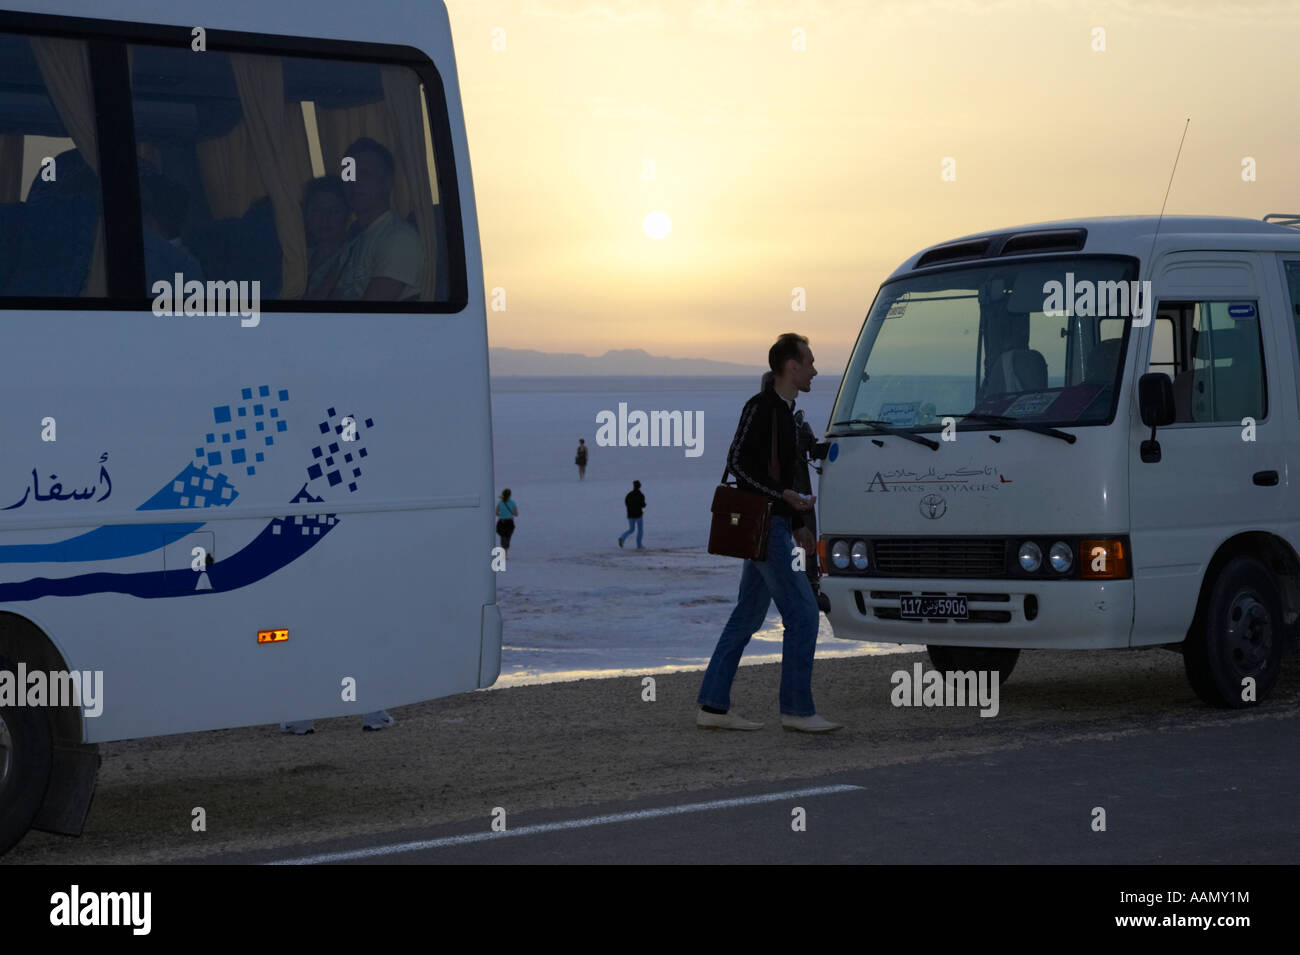 Promenades touristiques entre deux bus touristiques comme le soleil se lève sur la tunisie Chott el-jérid Banque D'Images